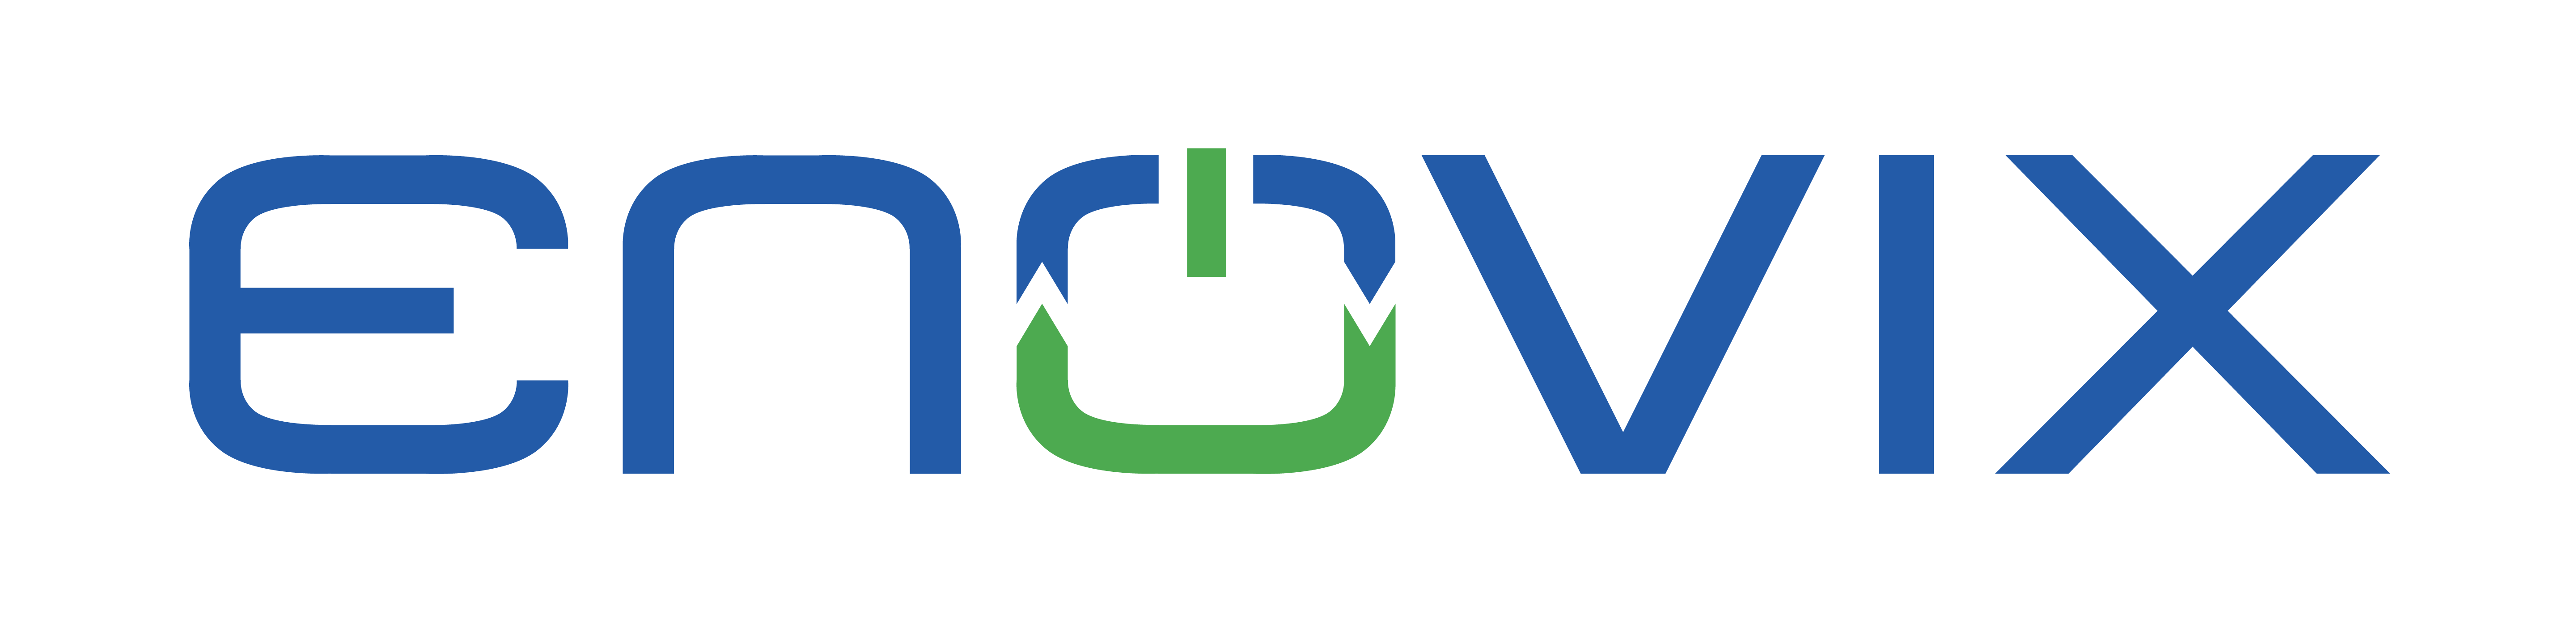 Enovix Logo.png